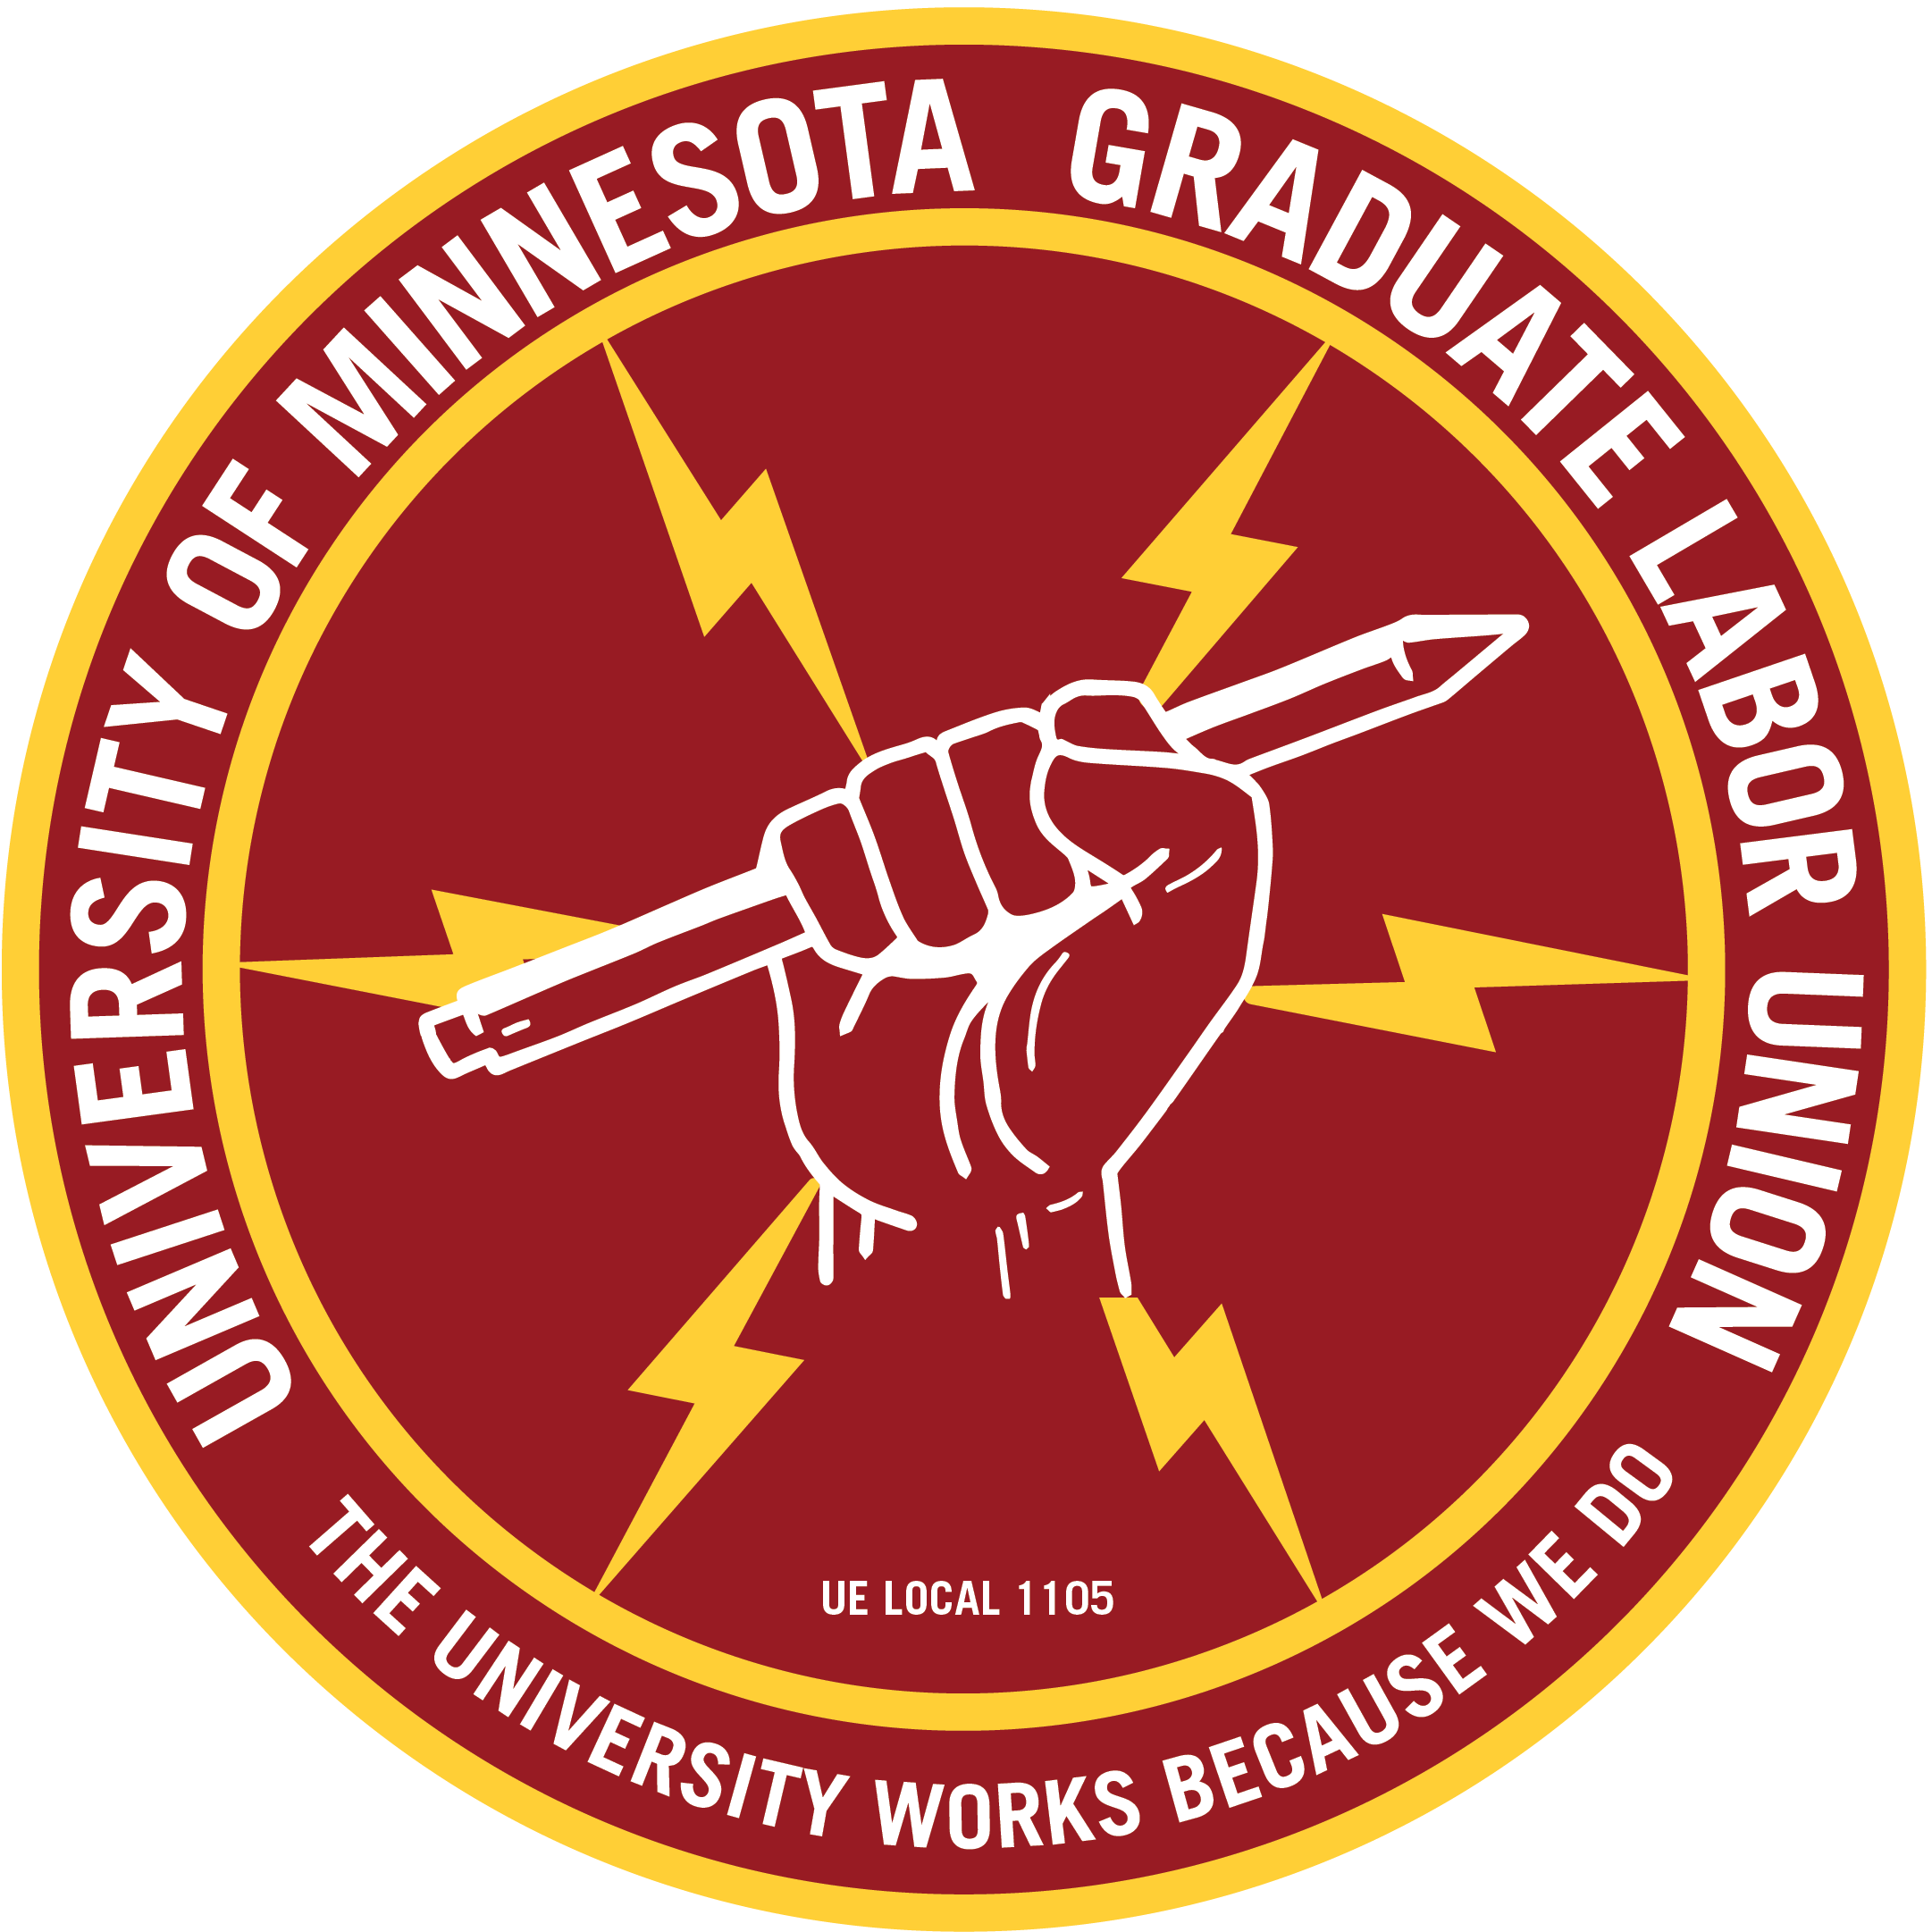 UMN Graduate Labor Union